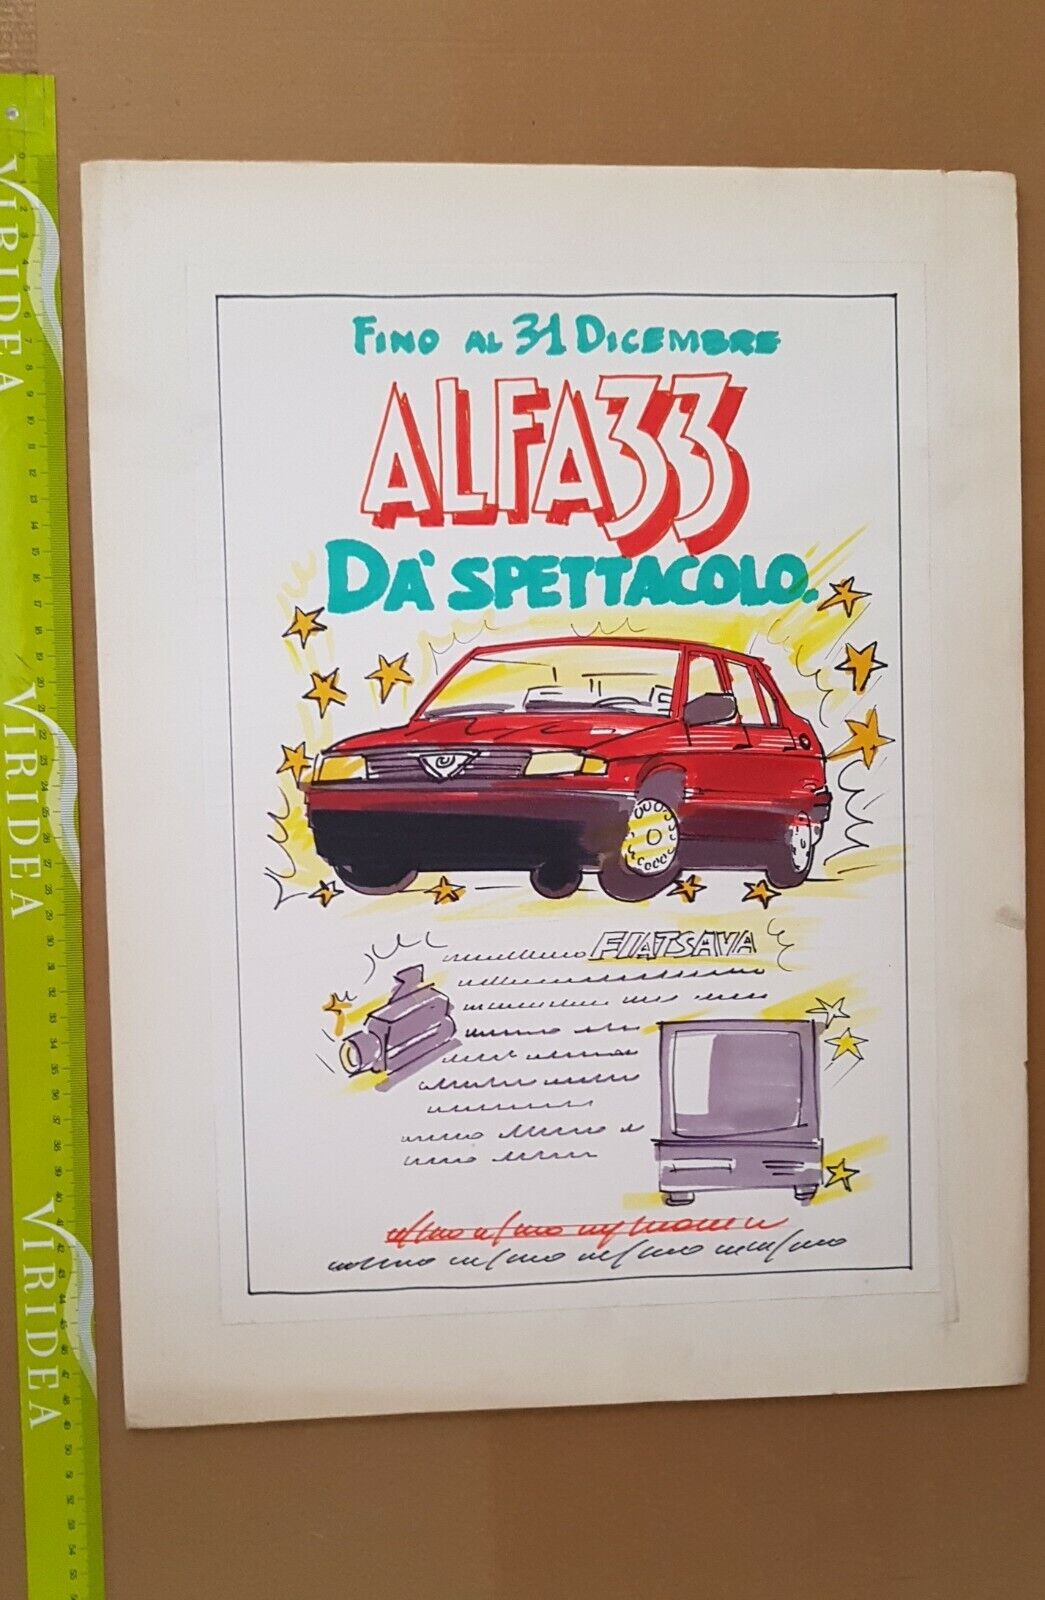 Alfa 33 bozzetto originale pubblicità disegno mano libera no manifesto poster 